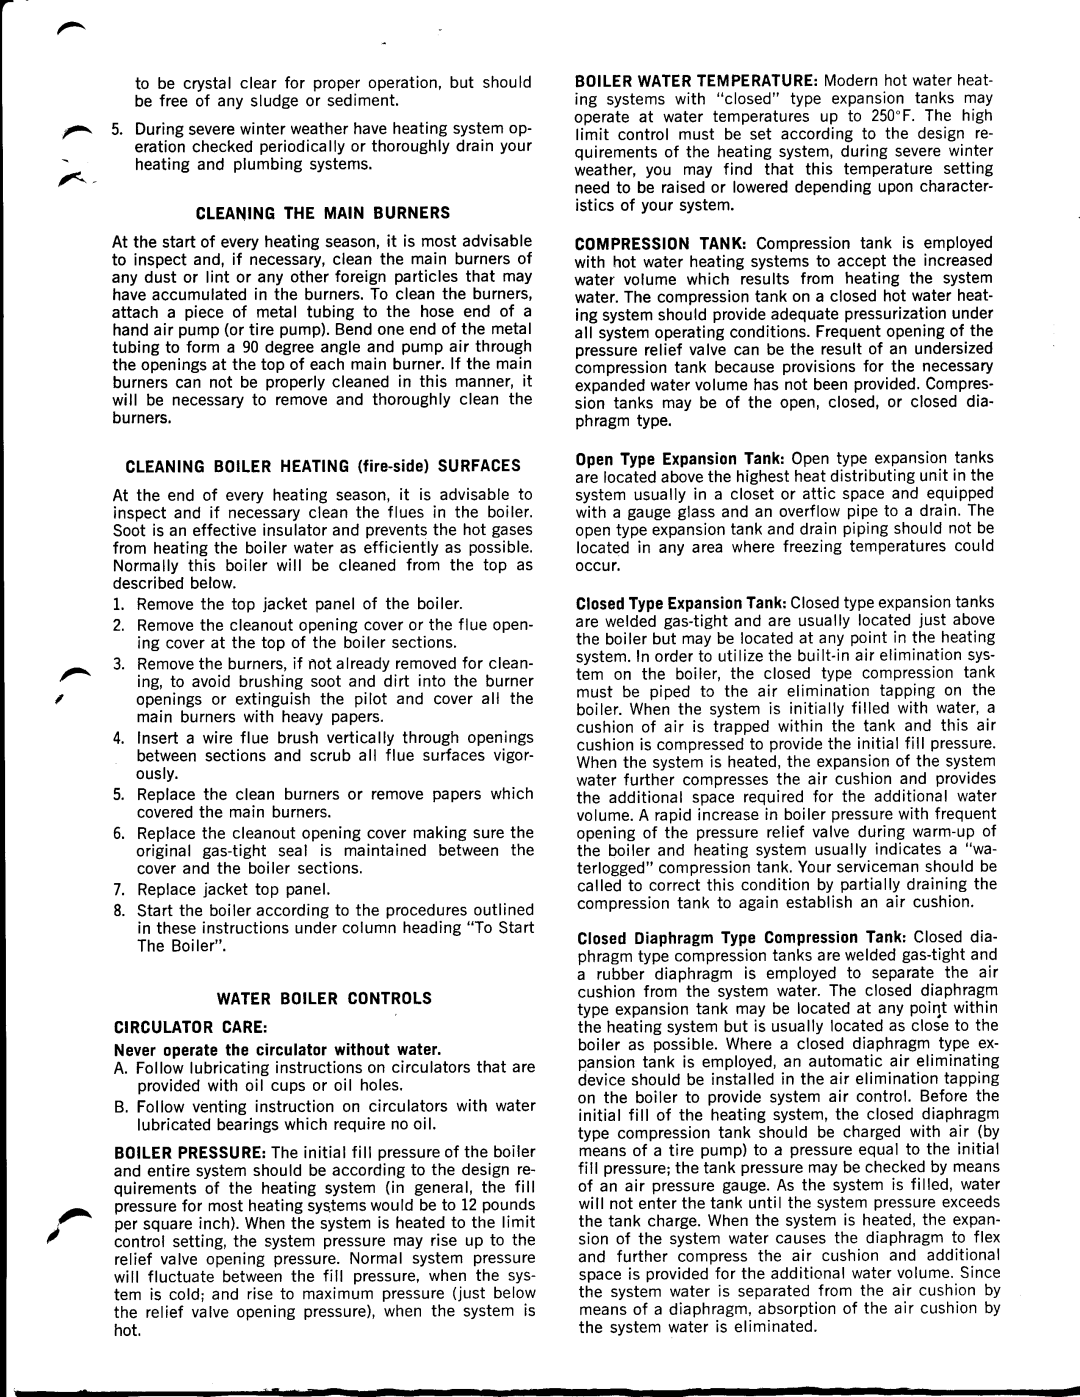 Weil-McLain CG Series 10 manual 